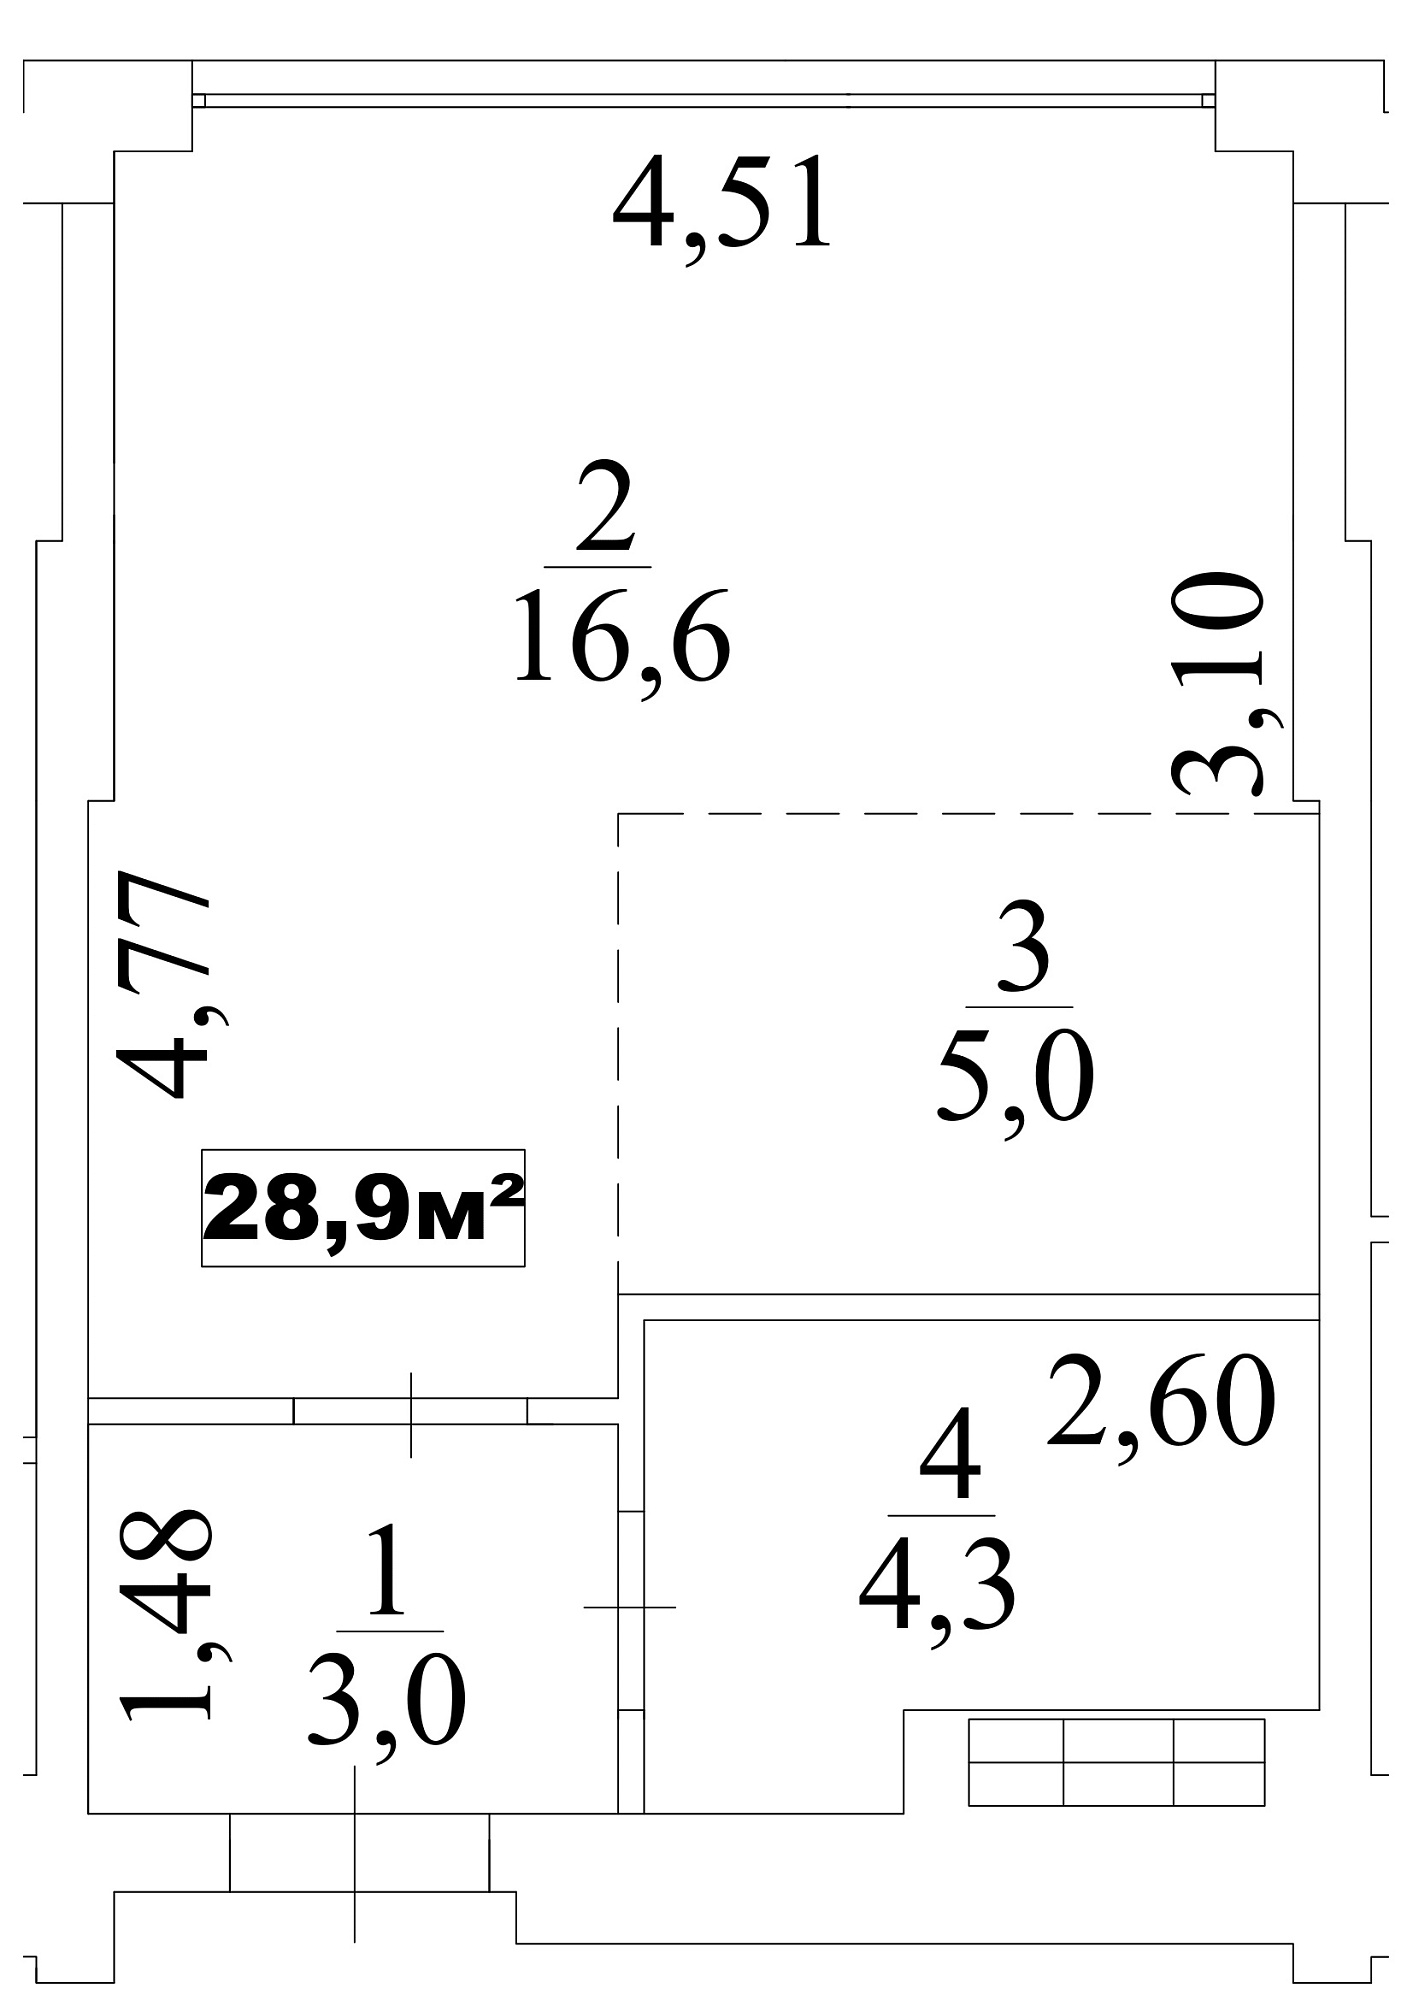 Планування Smart-квартира площею 28.9м2, AB-10-10/00086.